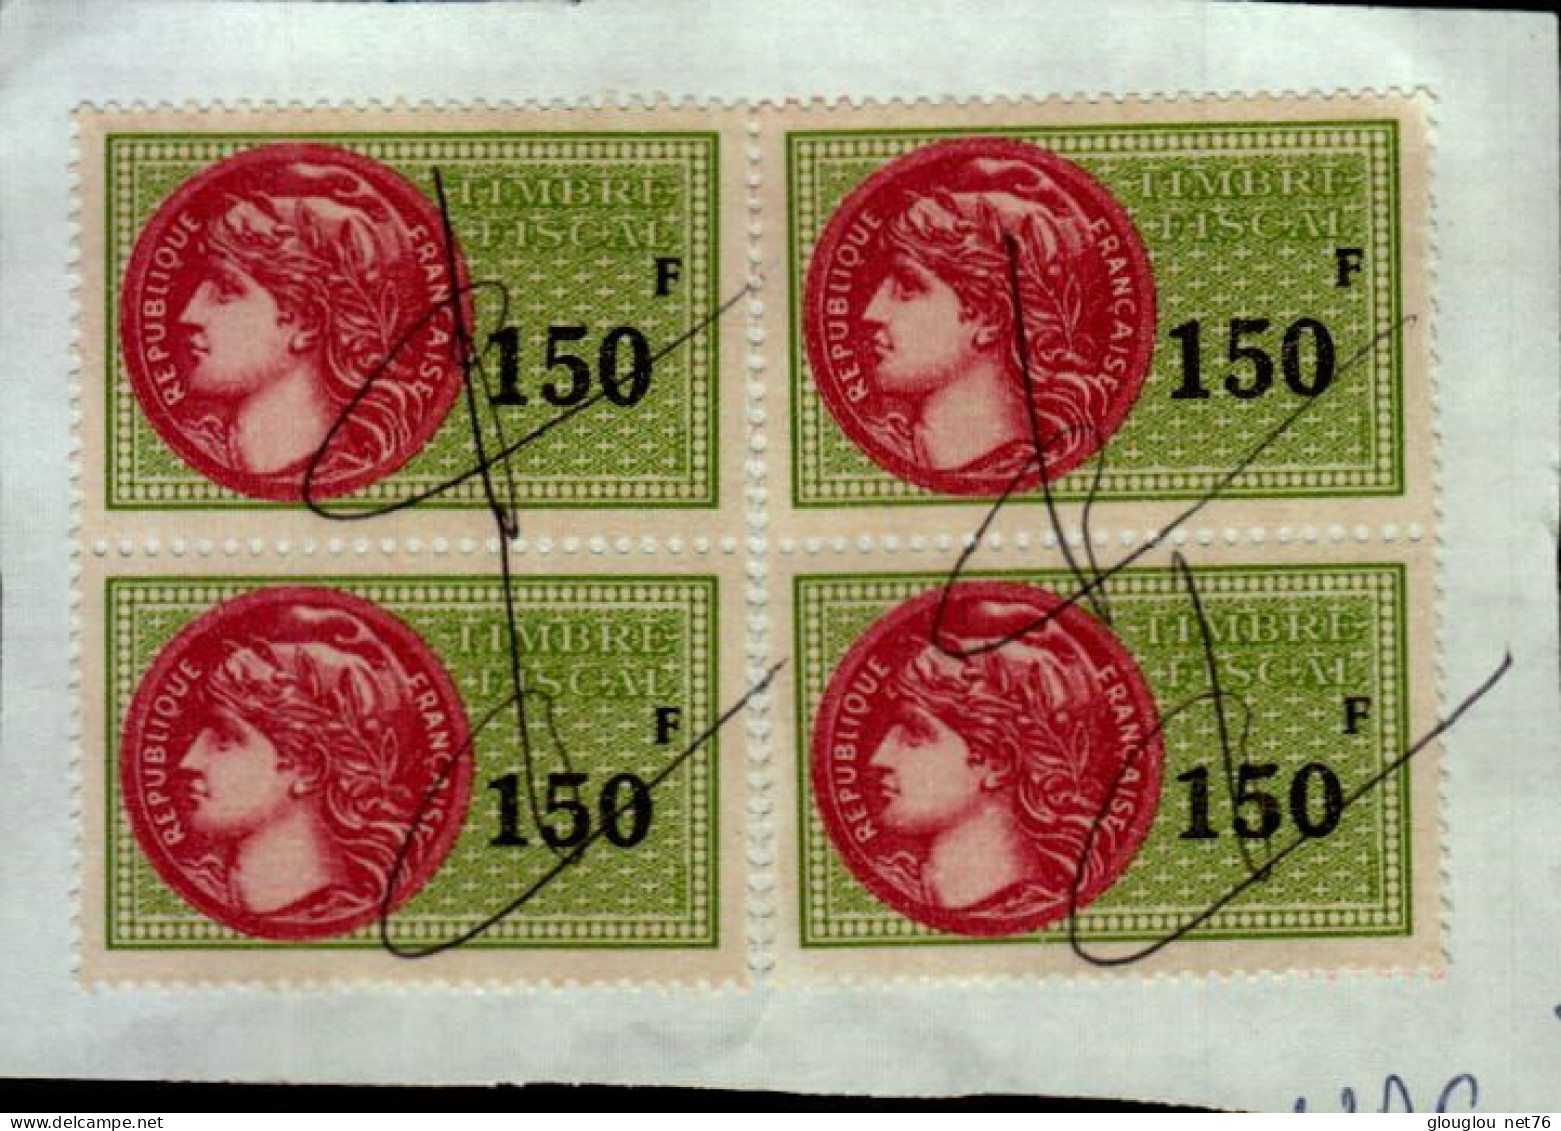 4 TIMBRES FISCAUX A 150 F   COLLES SUR UNE FEUILLE - Stamps